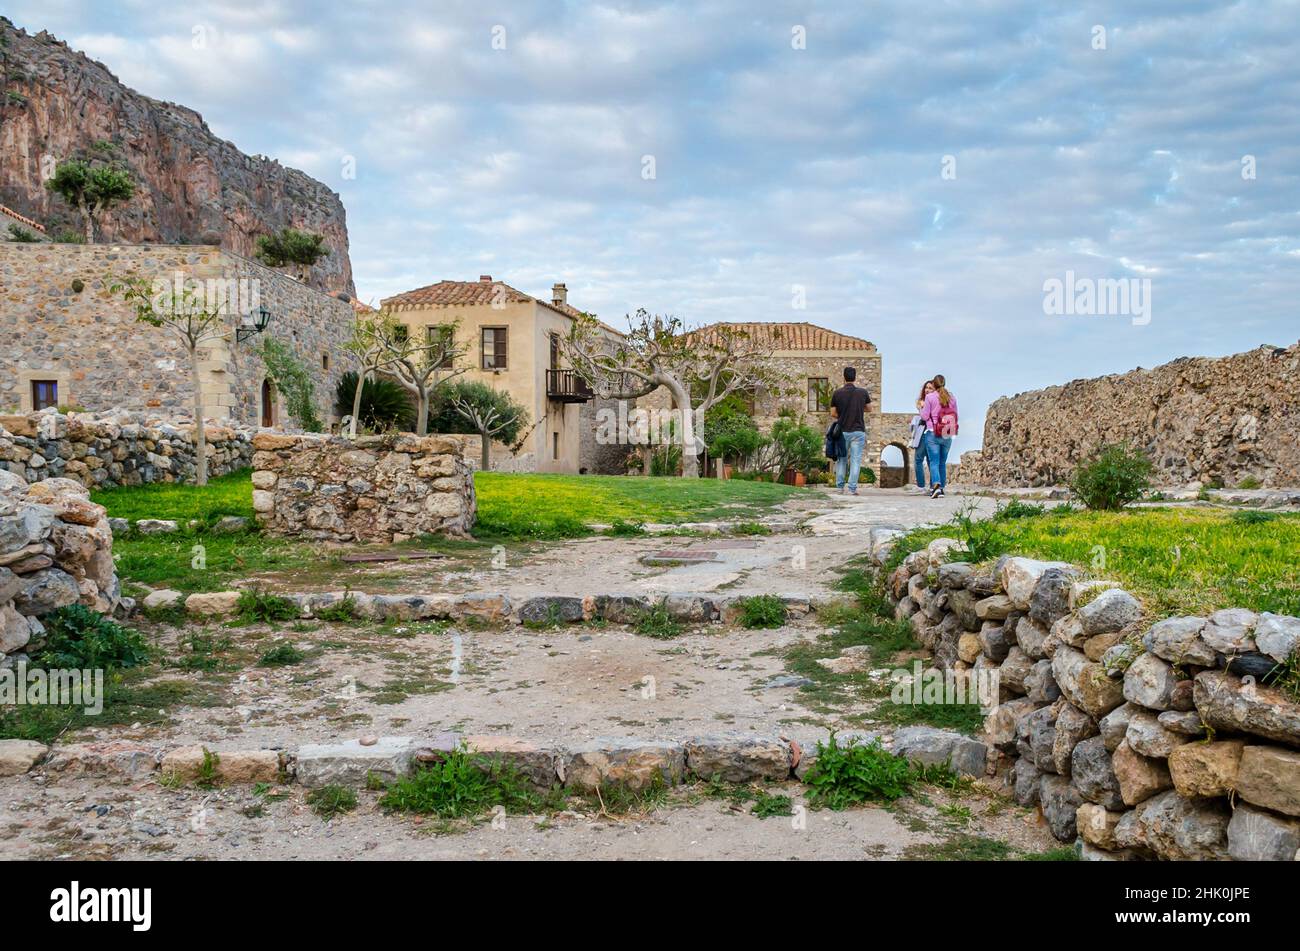 Touristen besuchen die historische Burgstadt auf der Insel Monemvasia, Griechenland. Traditionelle Häuser und mittelalterliche Stadtmauern in einer natürlichen Umgebung Stockfoto